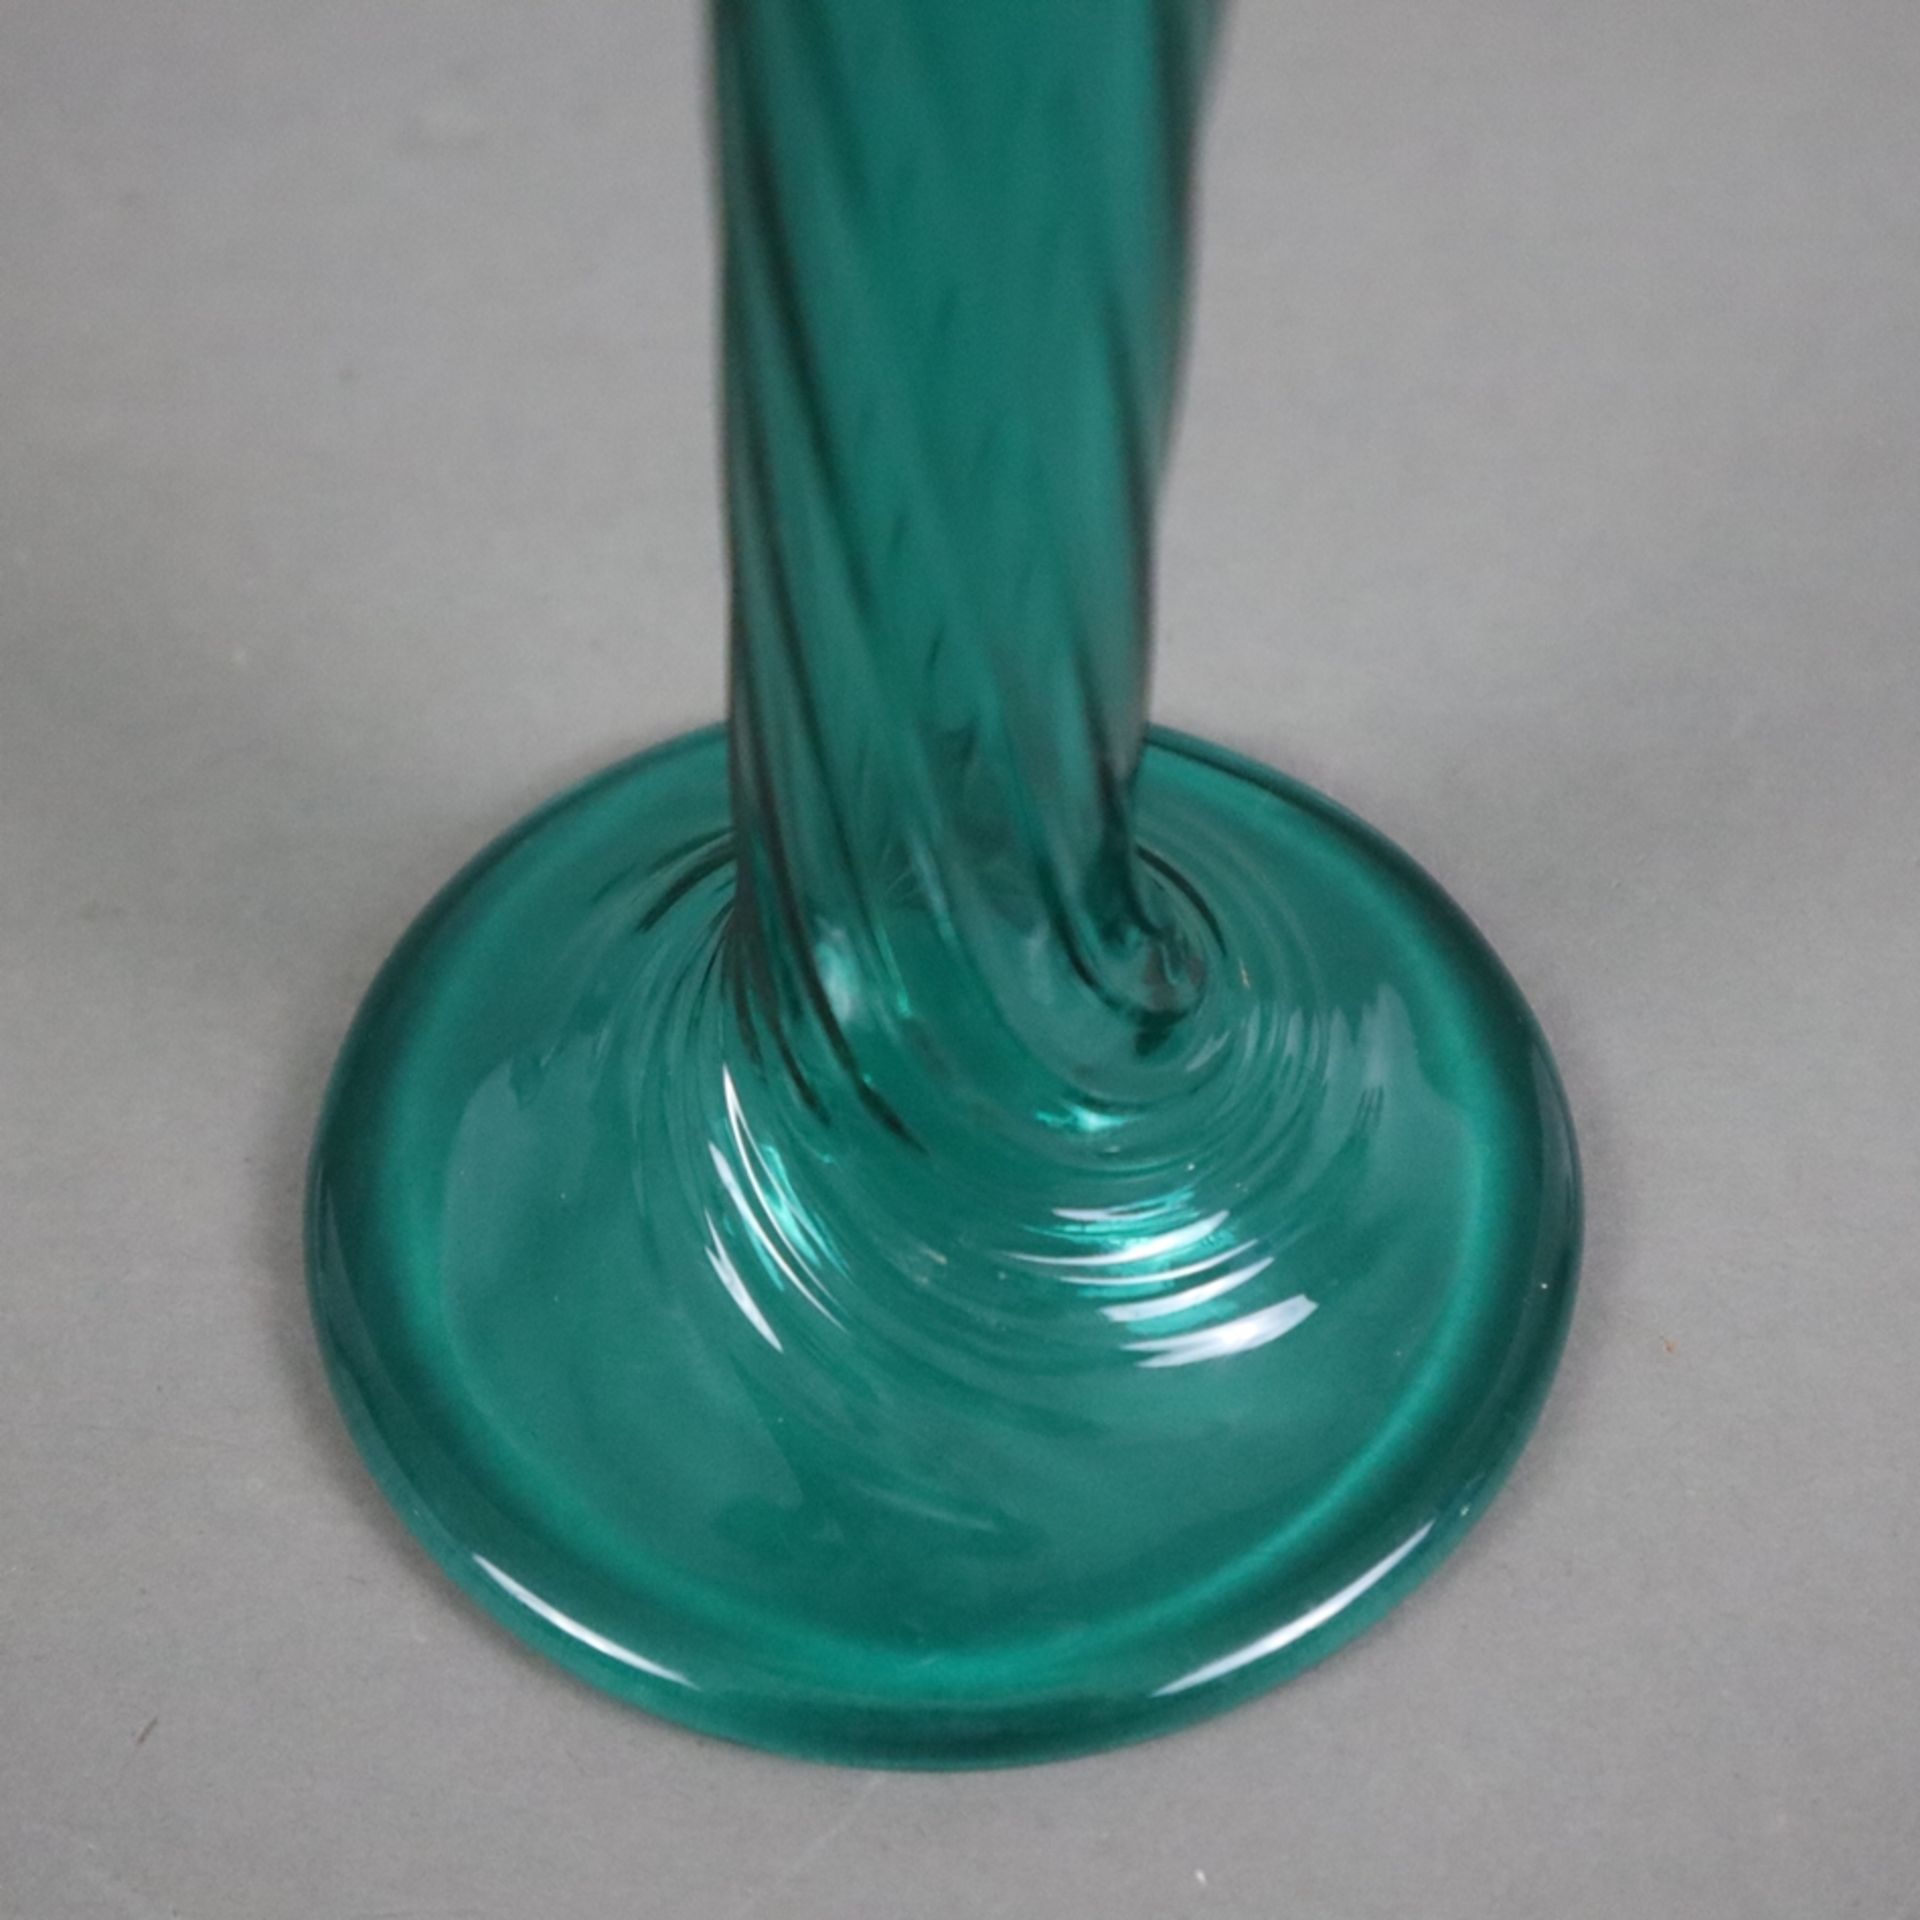 Enghalsvase - Murano, bläulich grünes Glas, über rundem Fuß konischer Korpus mit weit ausgestelltem - Bild 5 aus 6